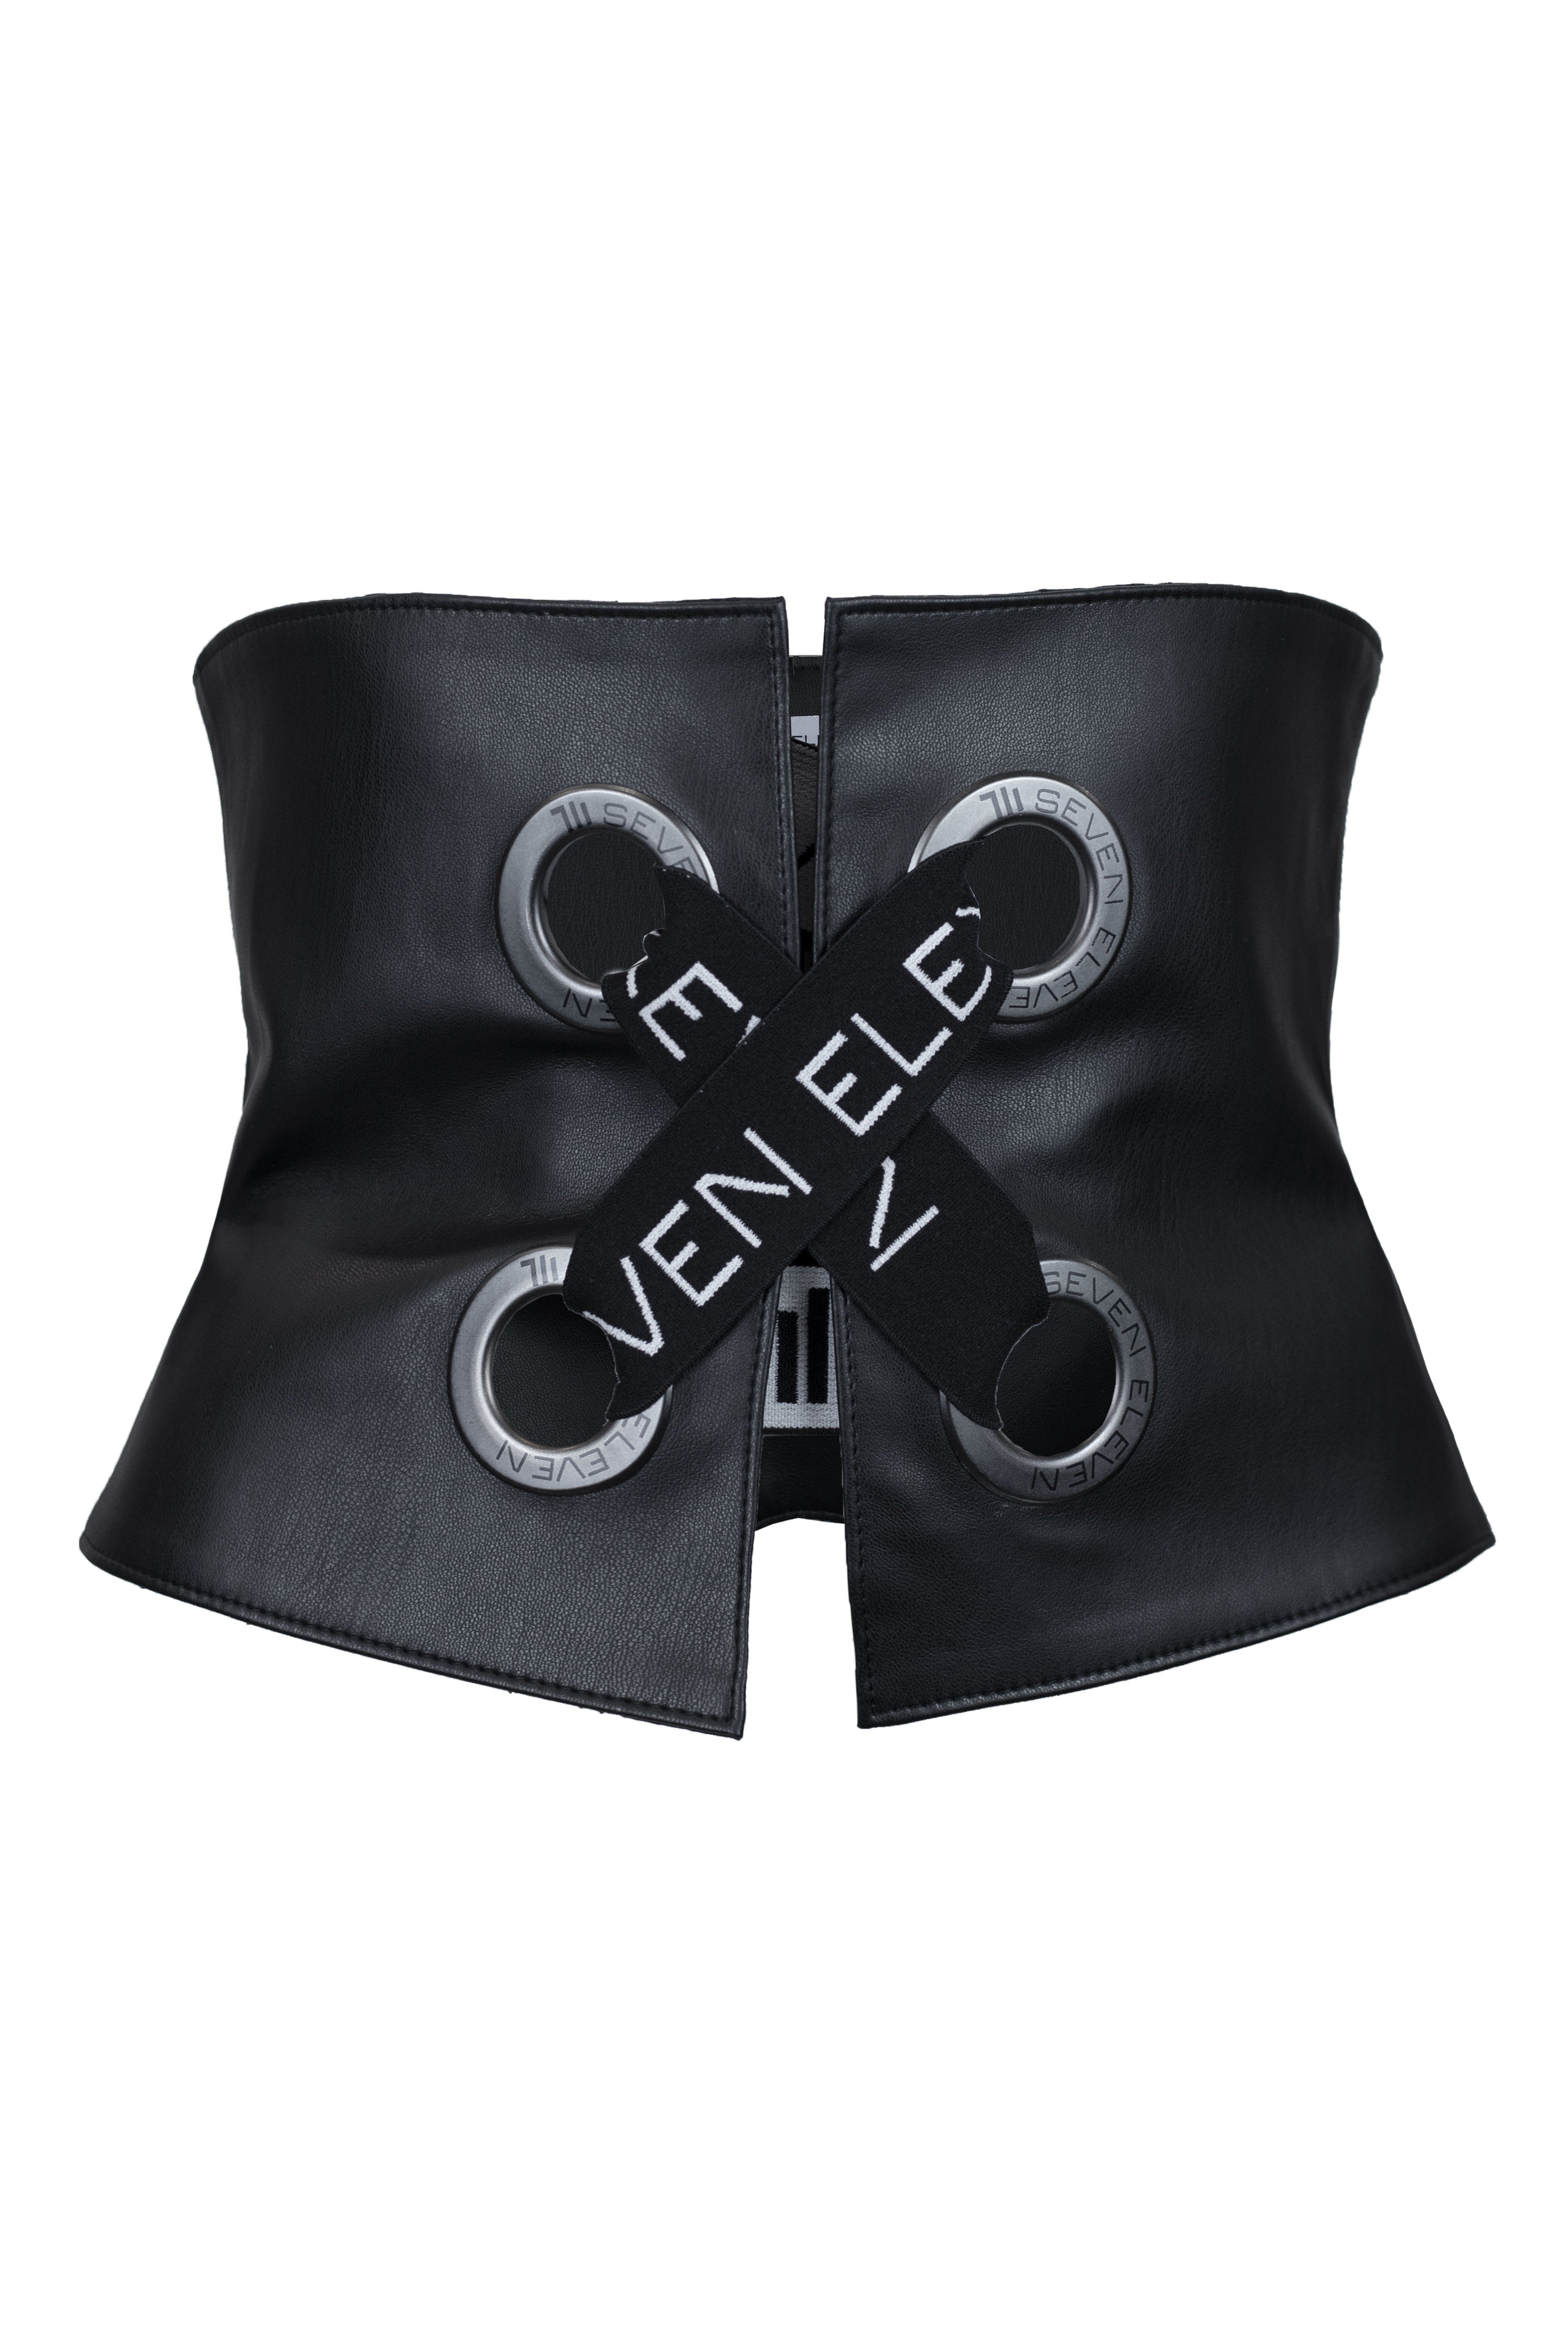 Black corset photo